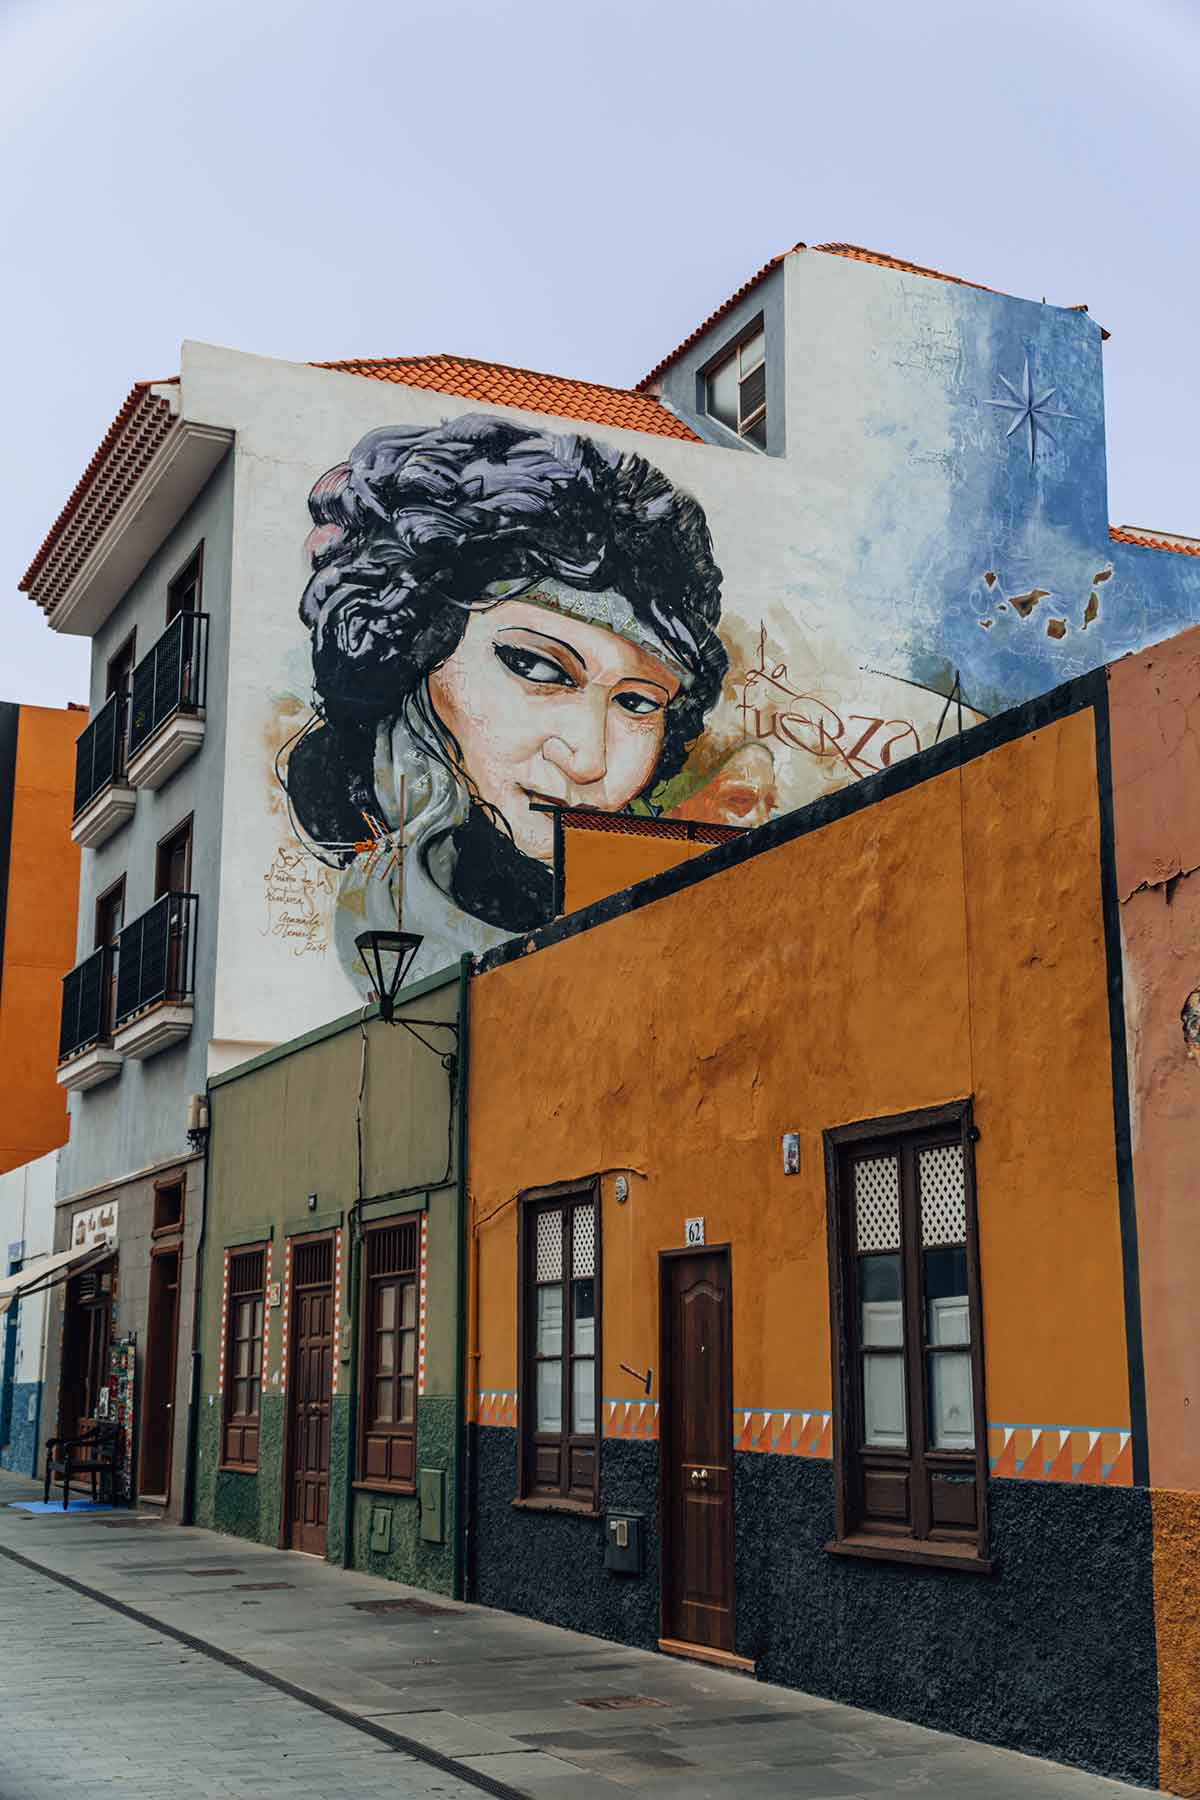 Local street art in Puerto de la Cruz